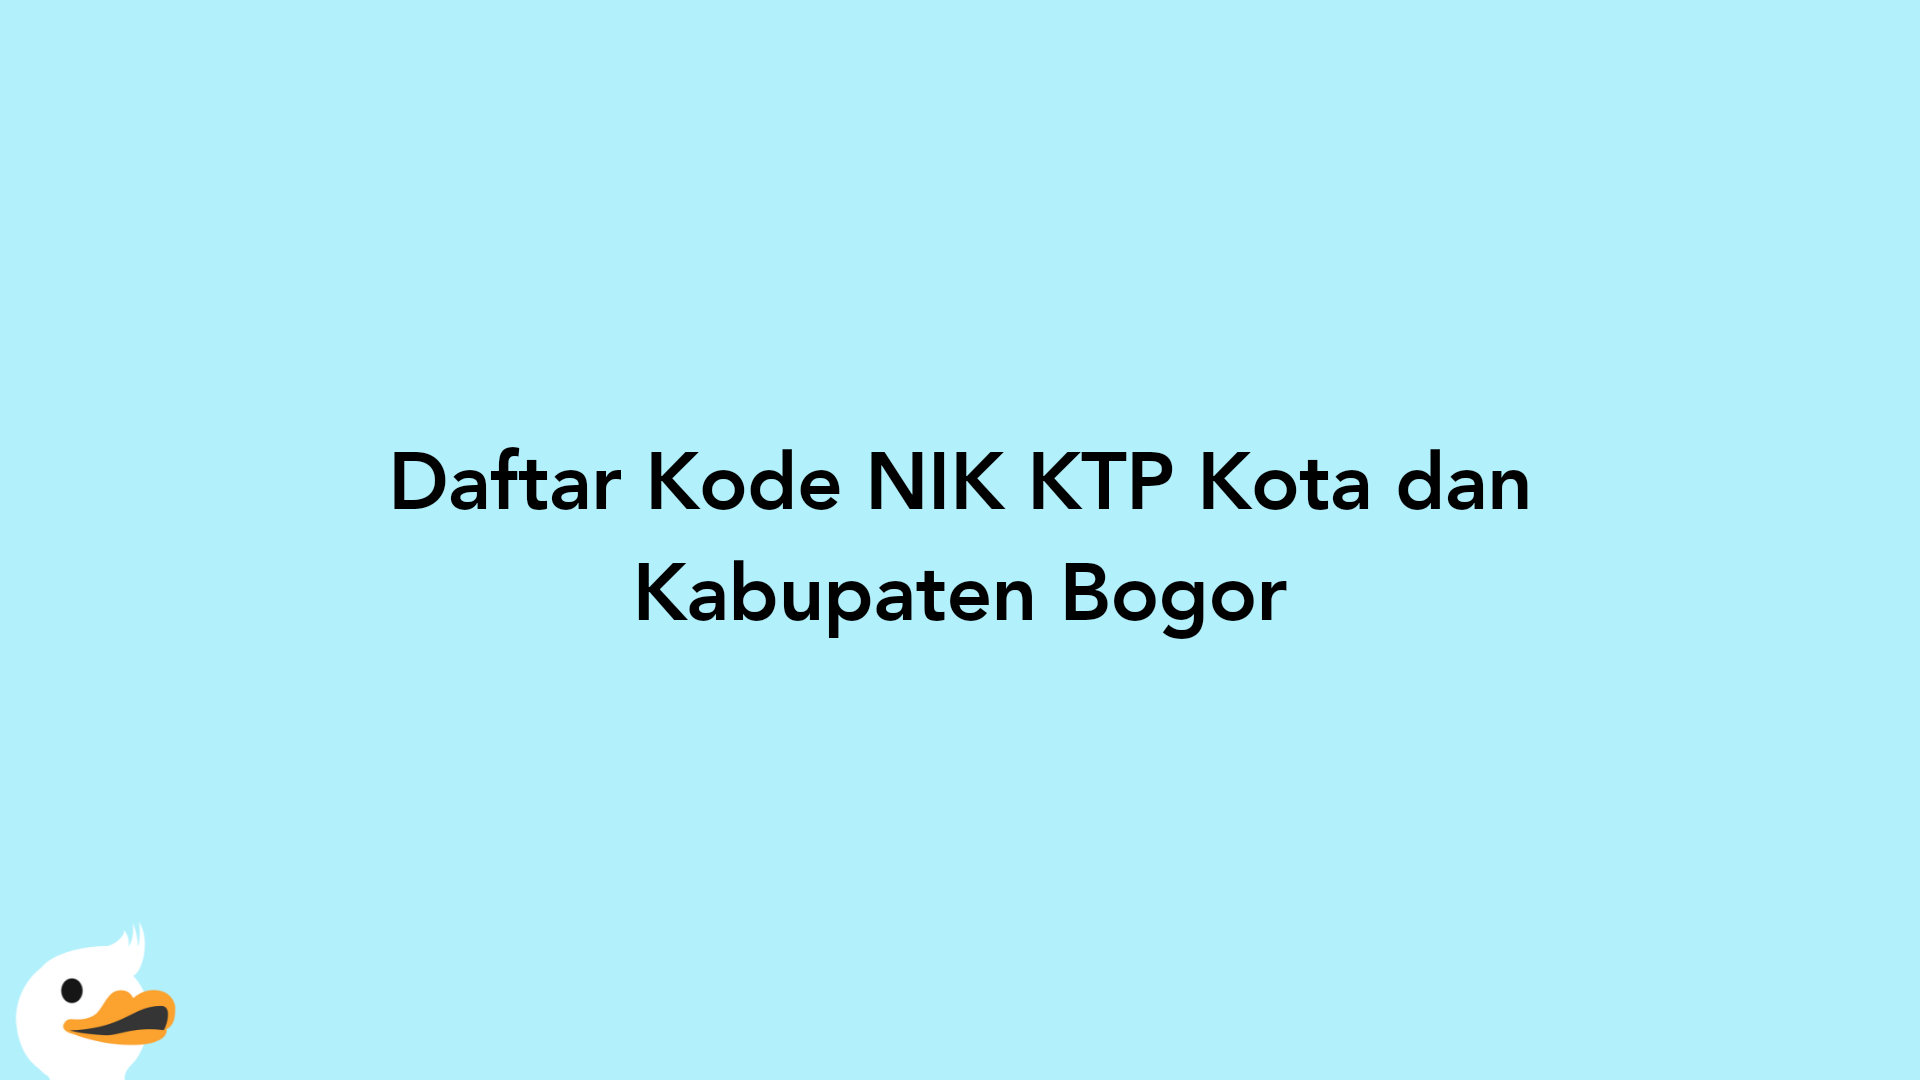 Daftar Kode NIK KTP Kota dan Kabupaten Bogor